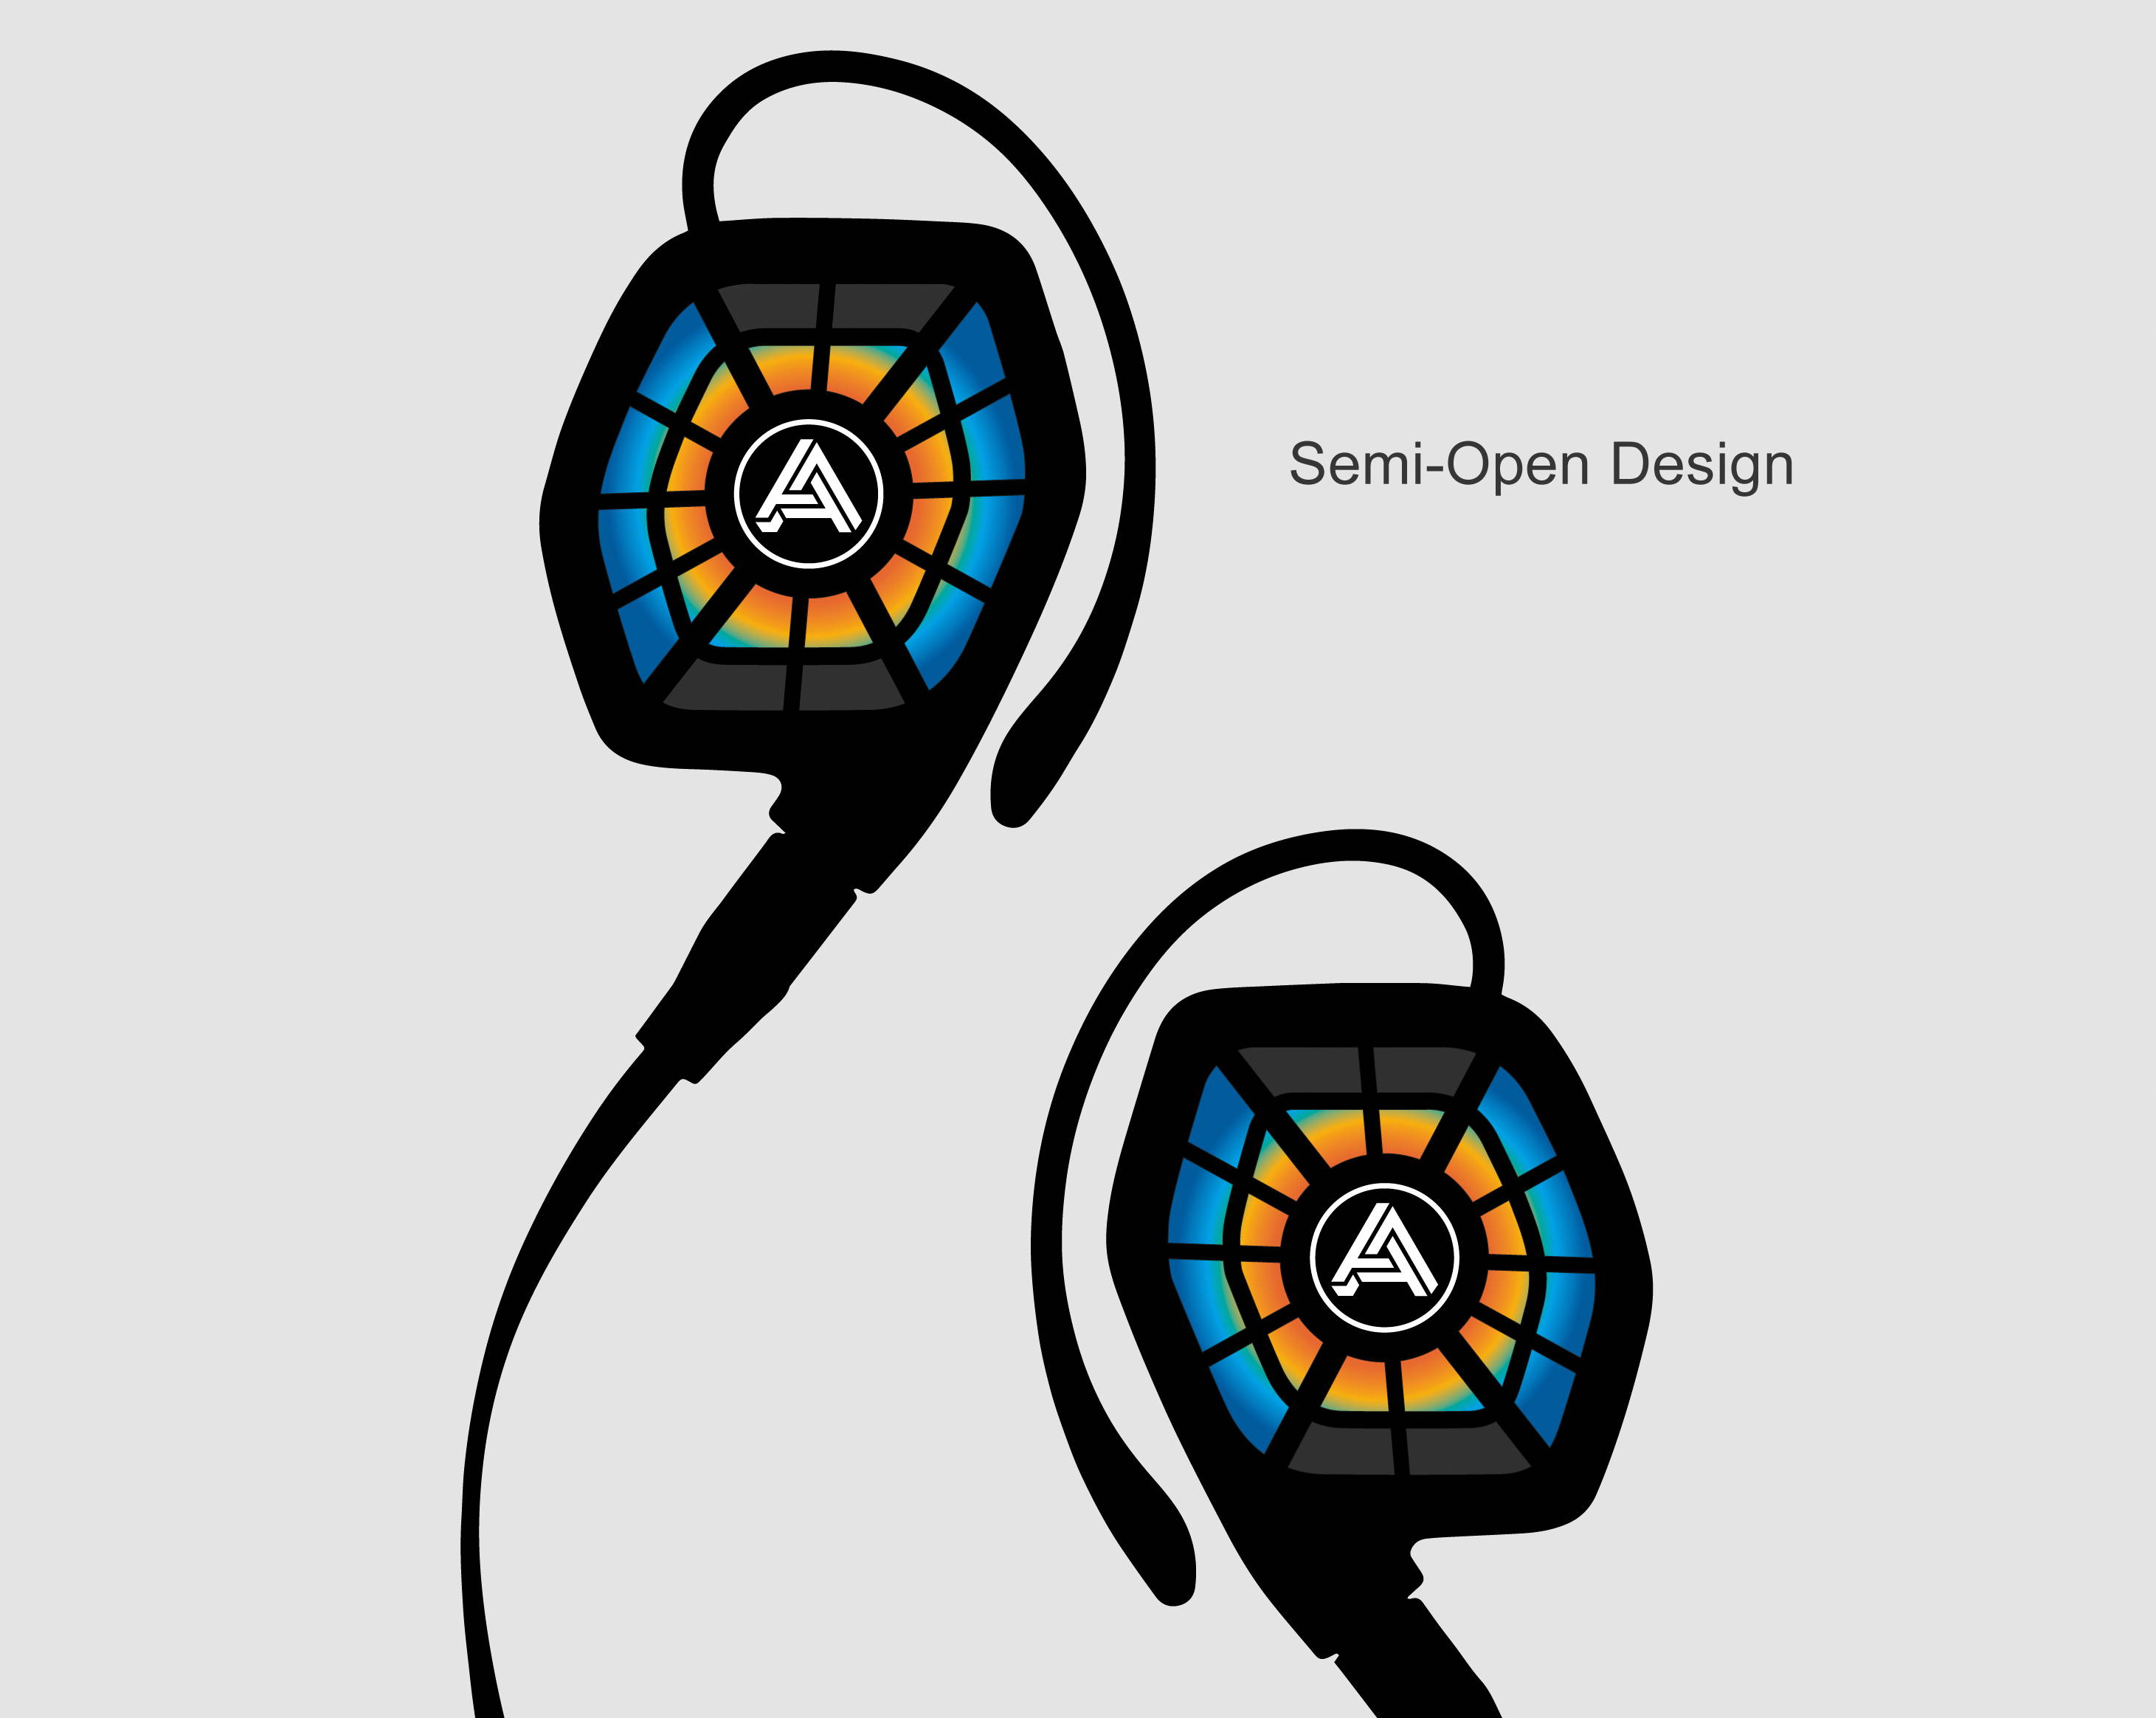 semi-open design graphic